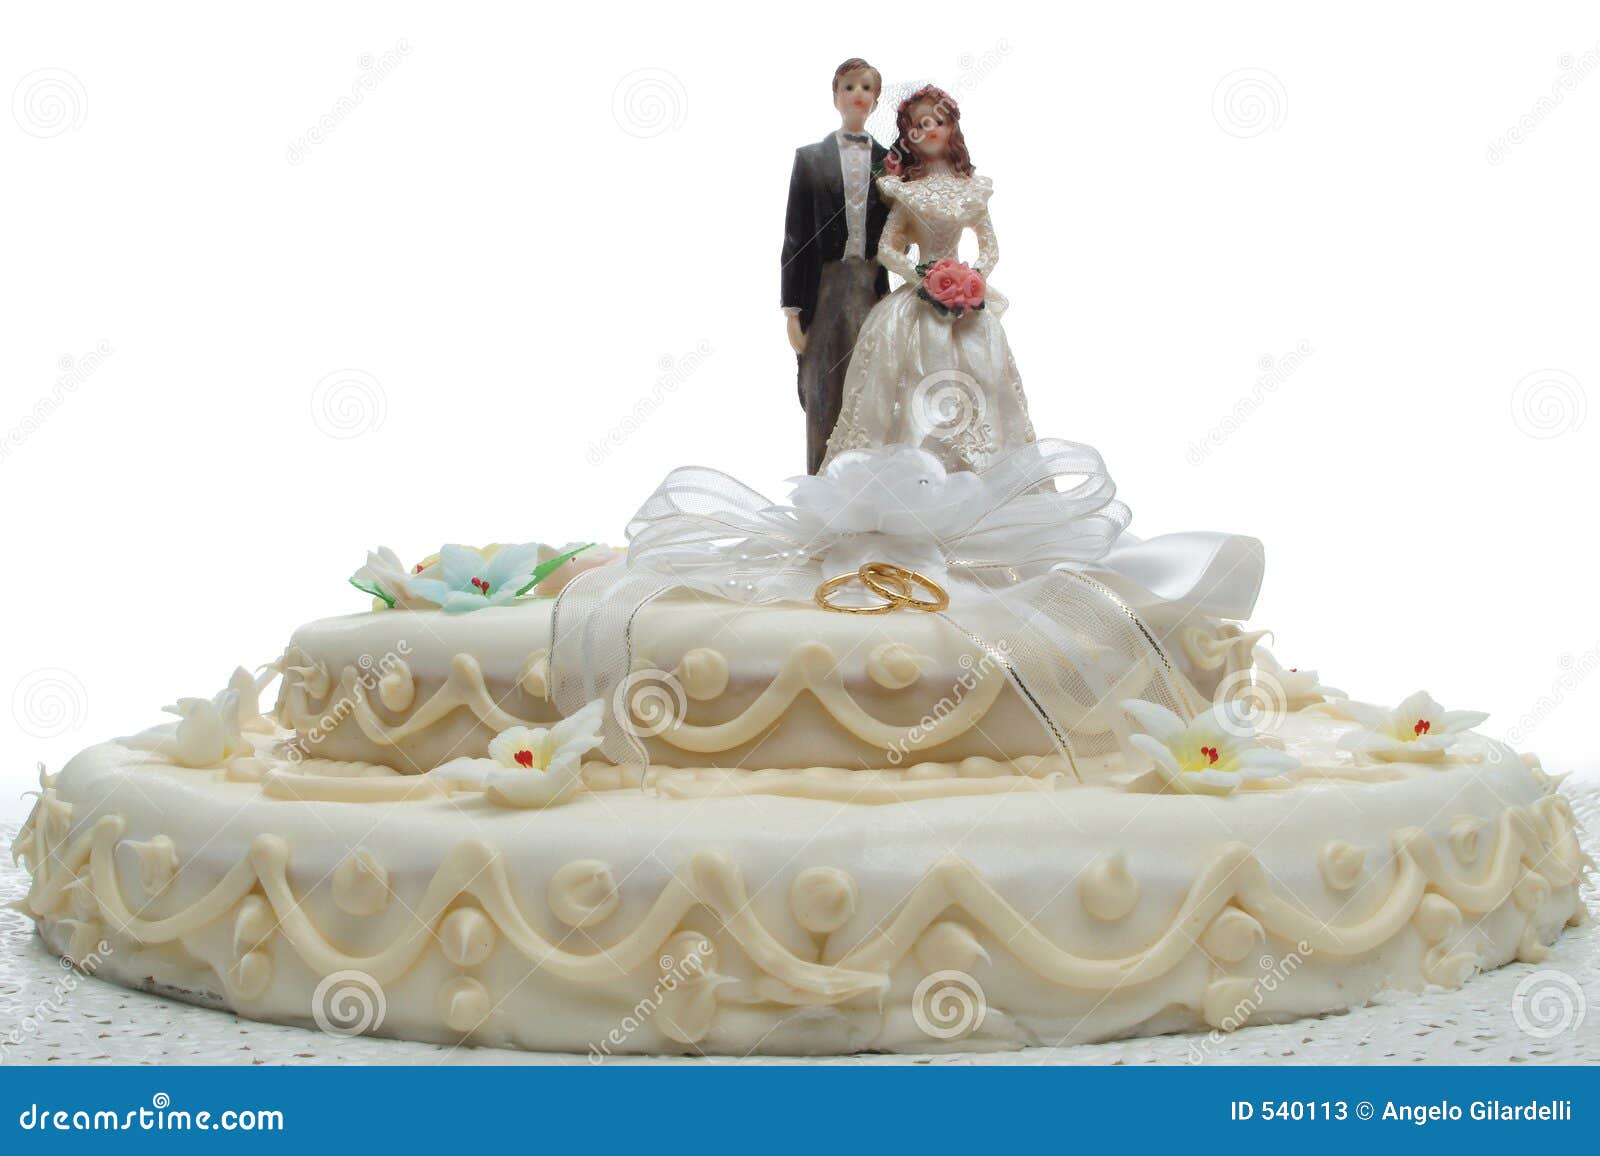 Wedding cake stock image. Image of festive, celebration - 540113